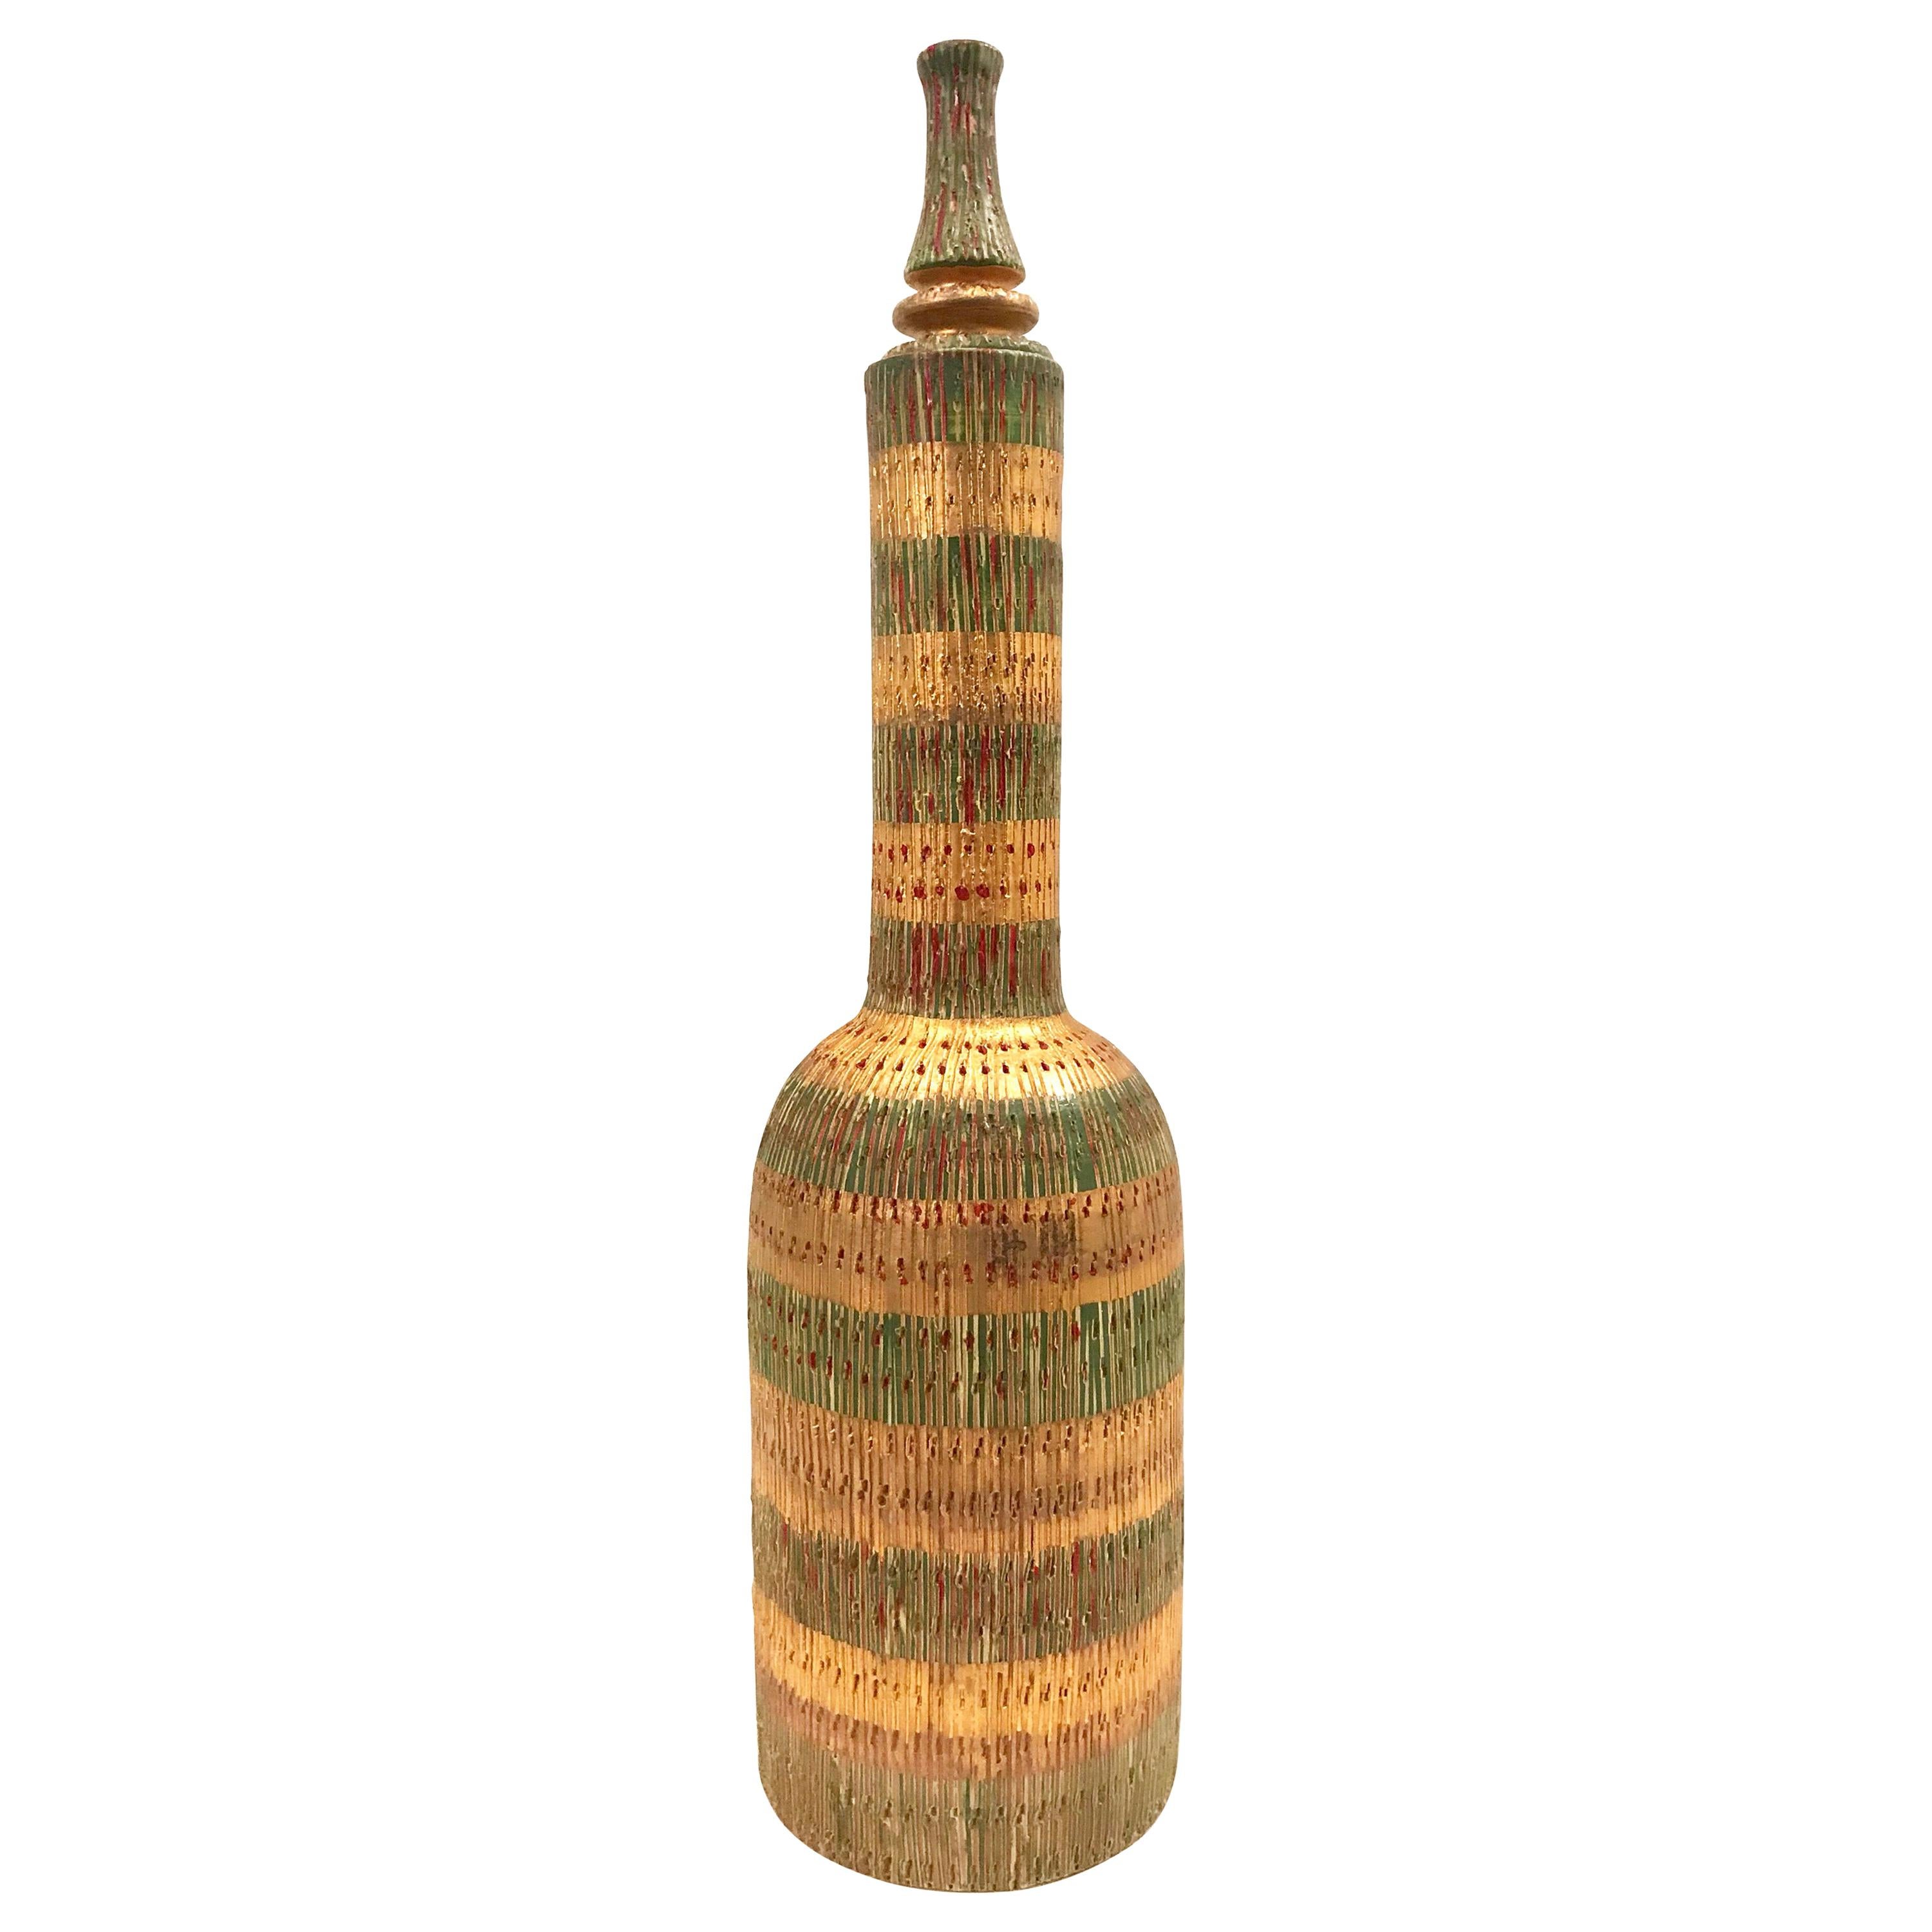 Aldo Londi for Bitossi Art Pottery Bottle Decanter For Sale